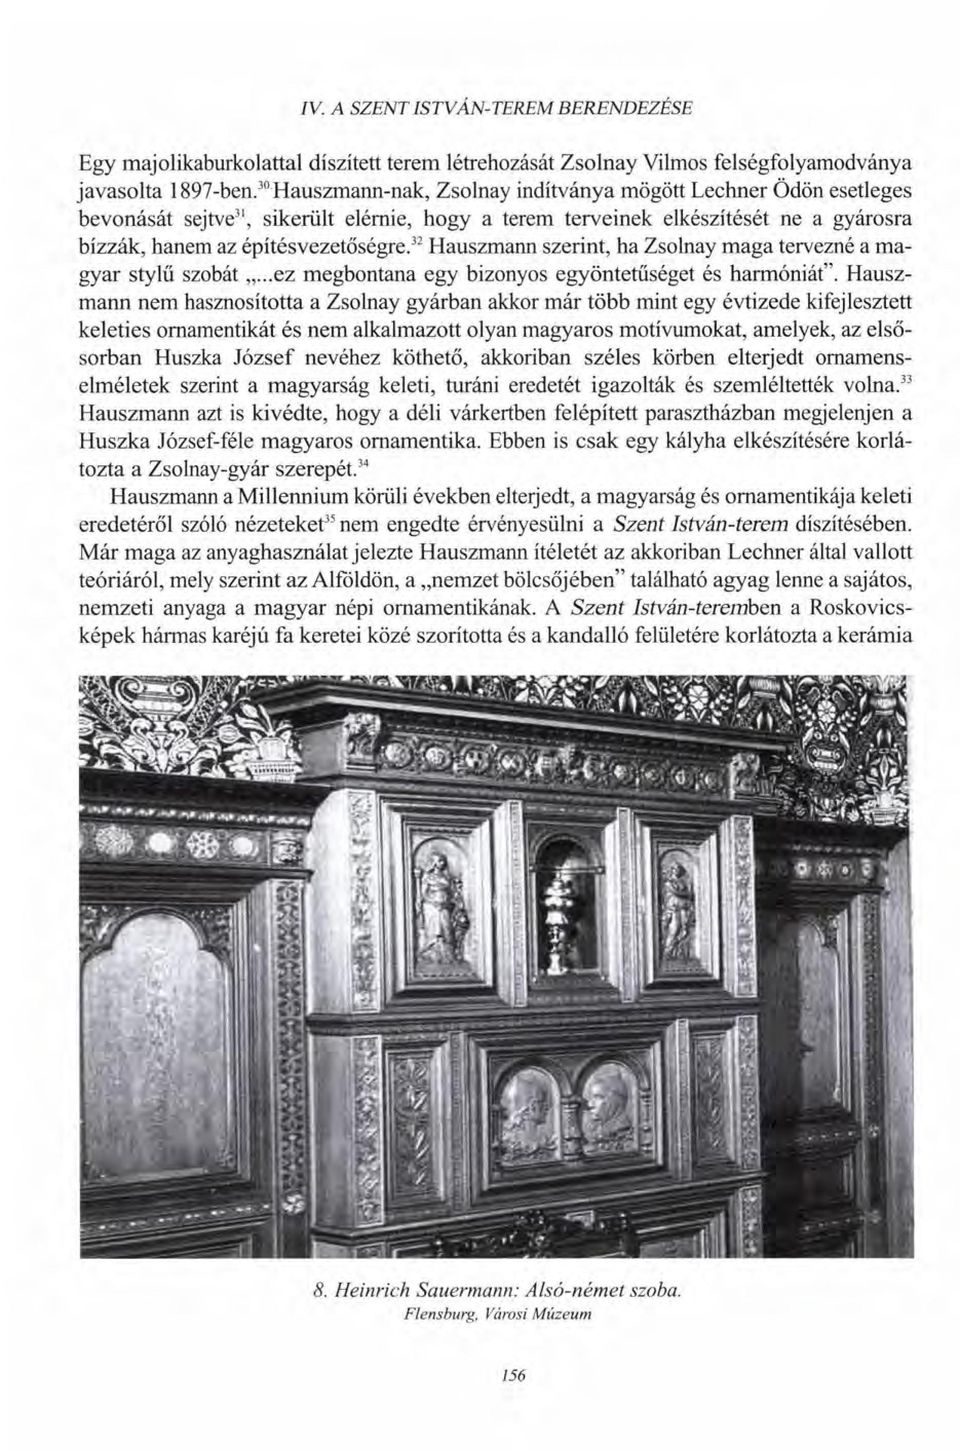 32 Hauszmann szerint, ha Zsolnay maga tervezné a magyar stylű szobát...ez megbontana egy bizonyos egyöntetűséget és harmóniát".